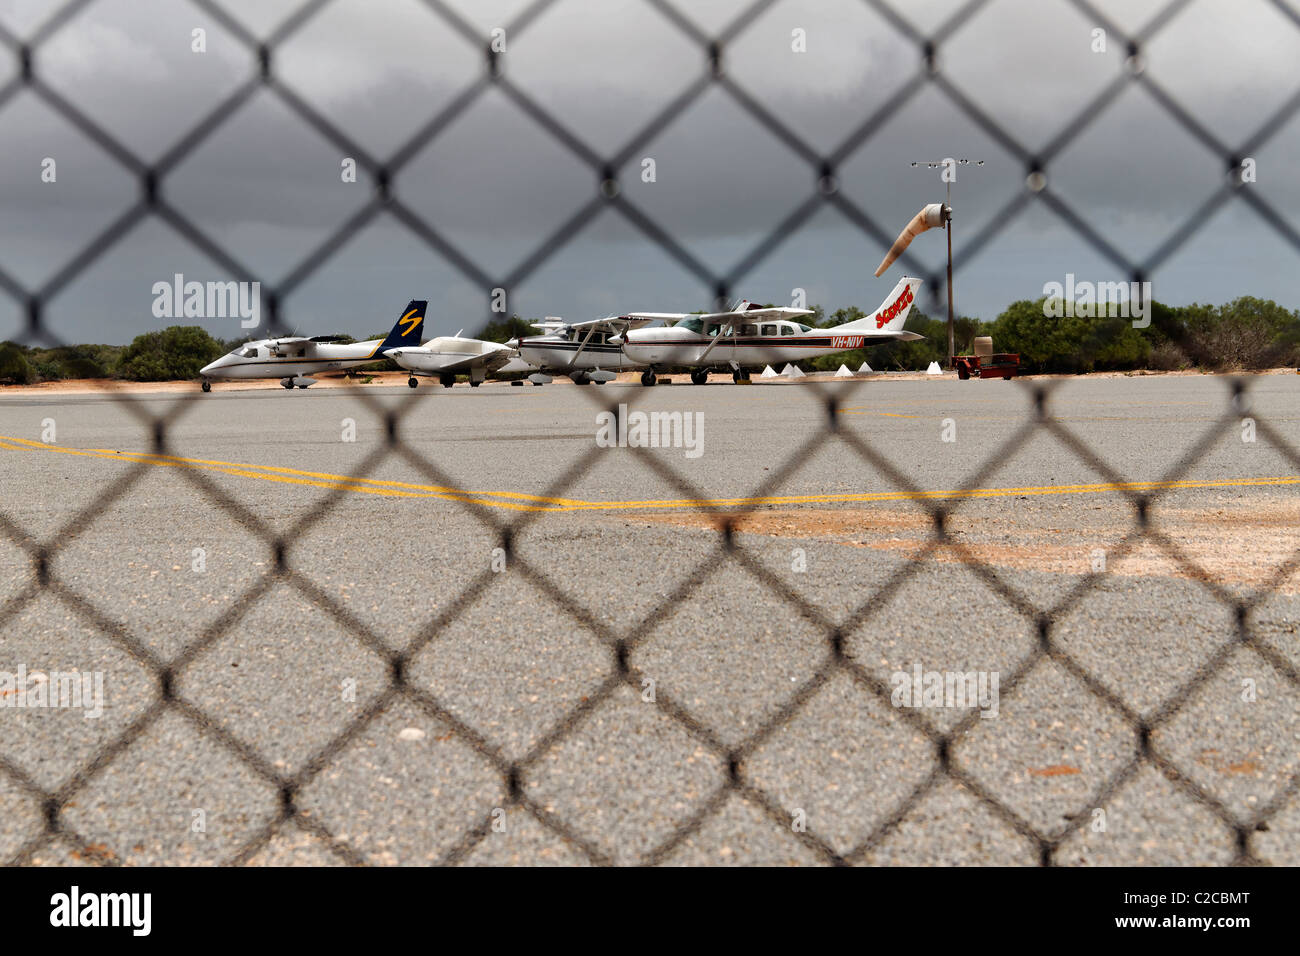 Aeromobili leggeri visto attraverso la recinzione di filo a Denham aeroporto, Shark Bay, a nord-ovest dell'Australia Foto Stock